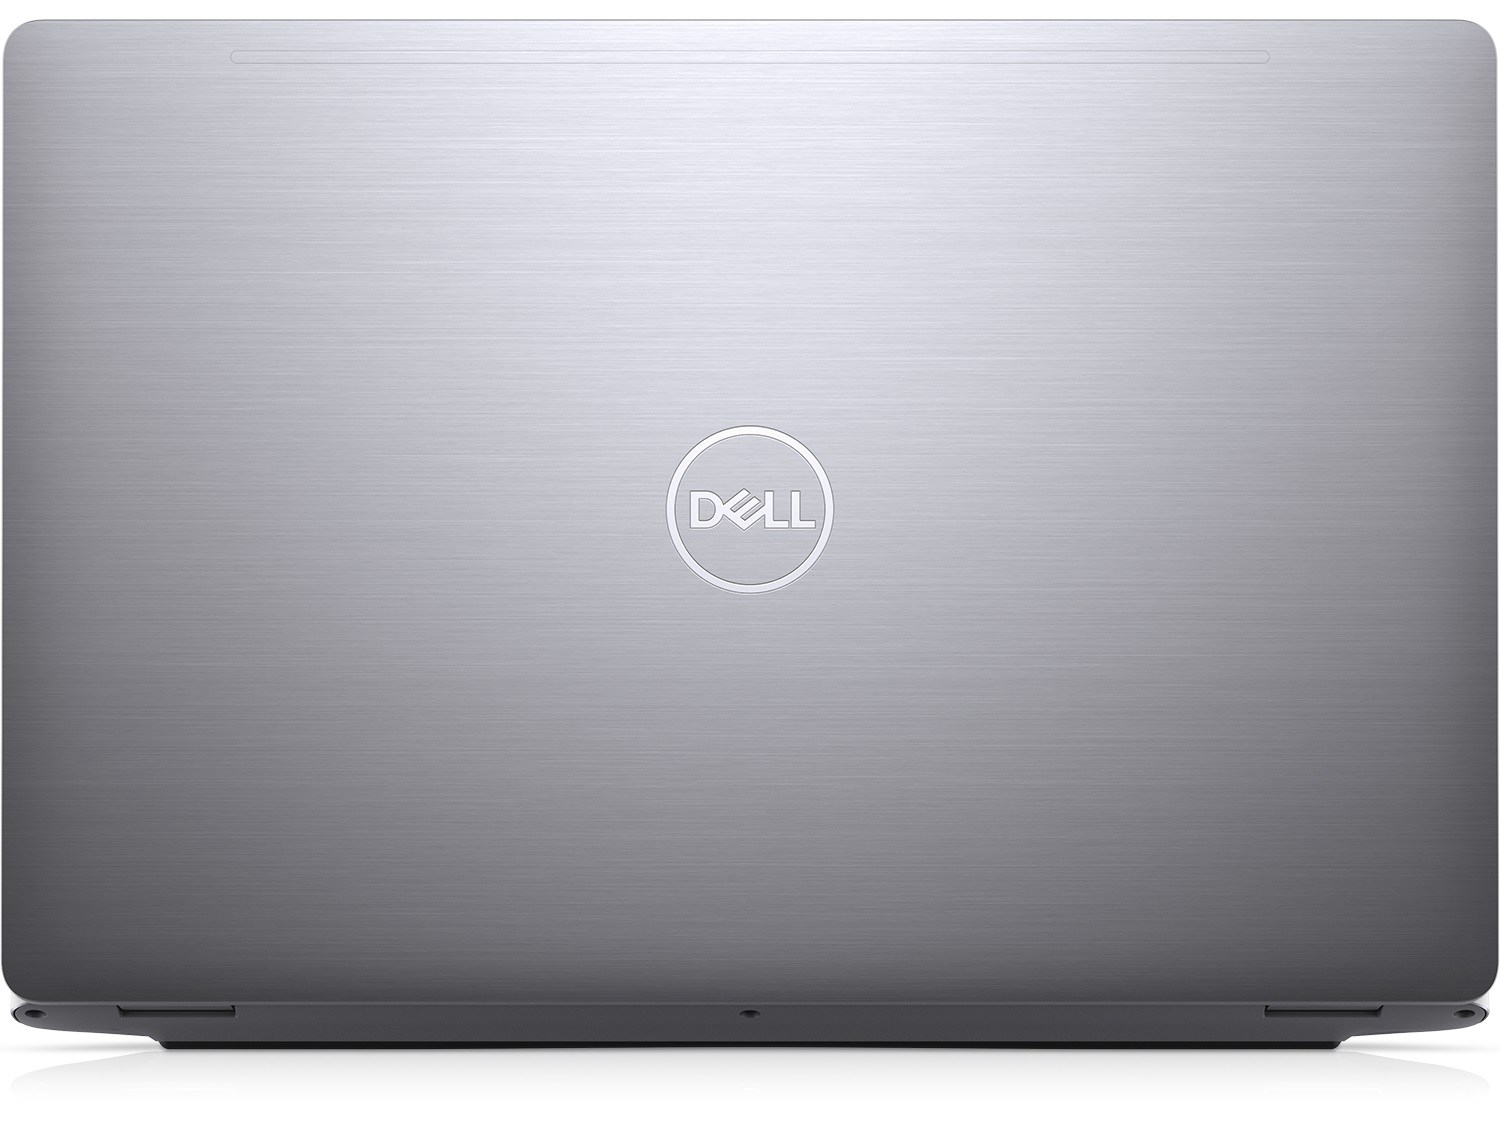 Nâng cấp SSD, RAM cho Laptop Dell Latitude 15 5510 